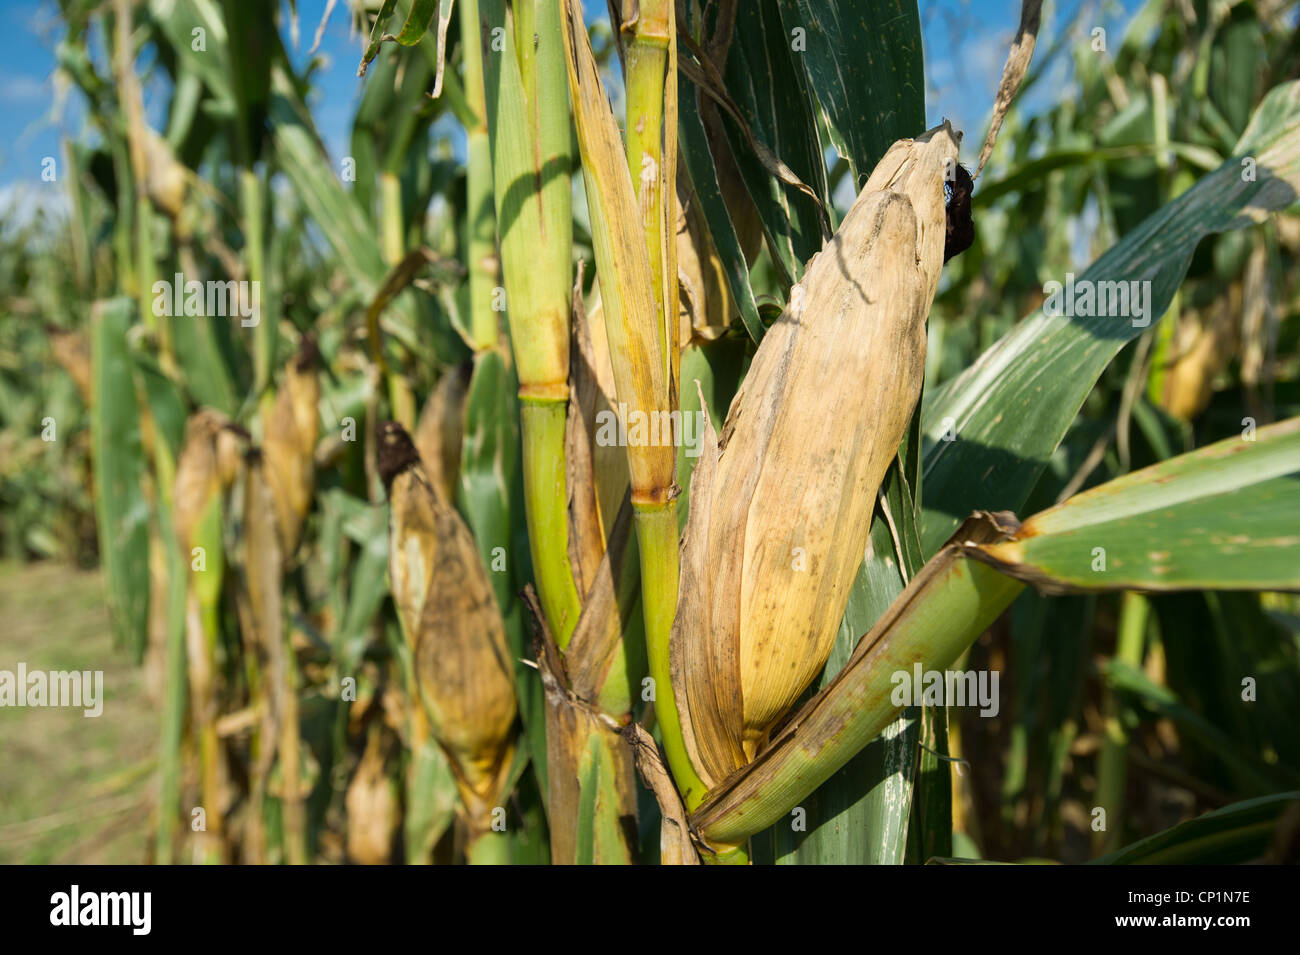 Los daños en los cultivos de maíz Foto de stock